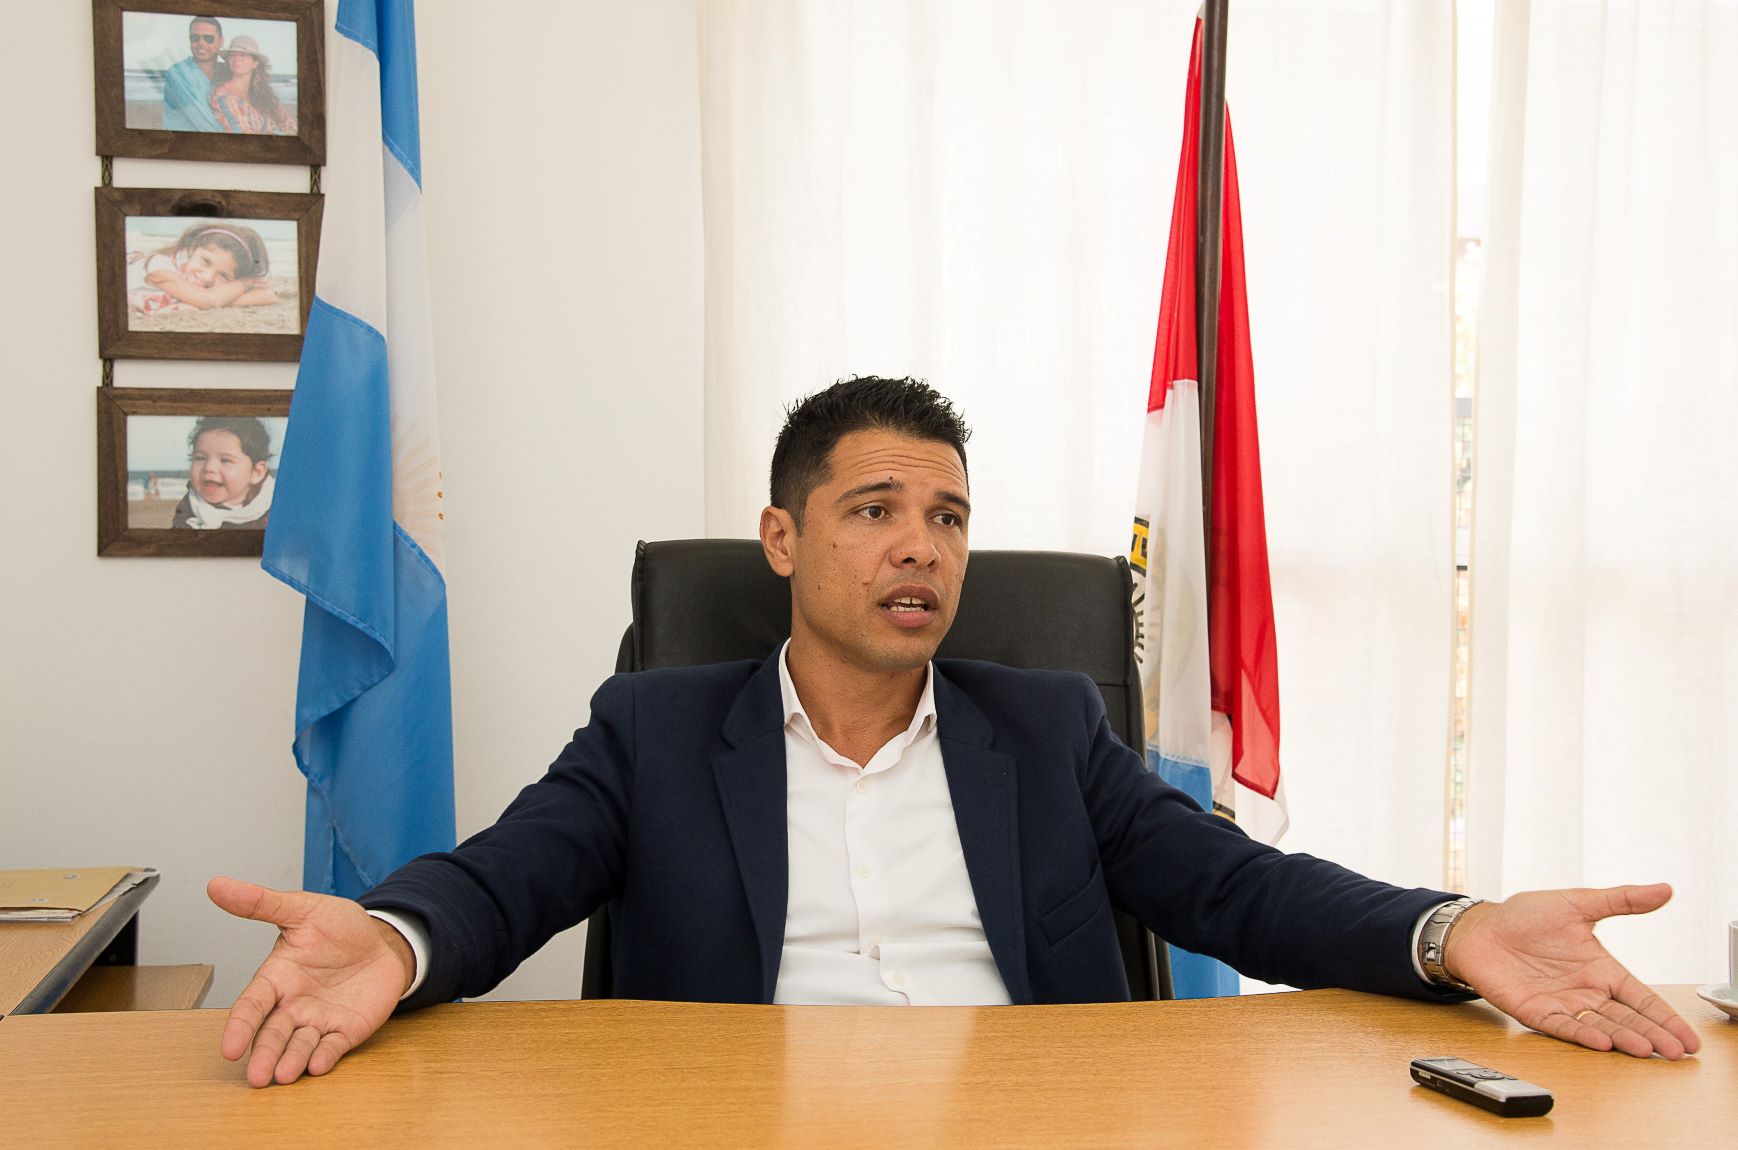 Otra mancha para el "León": denuncian penalmente al intendente de Funes